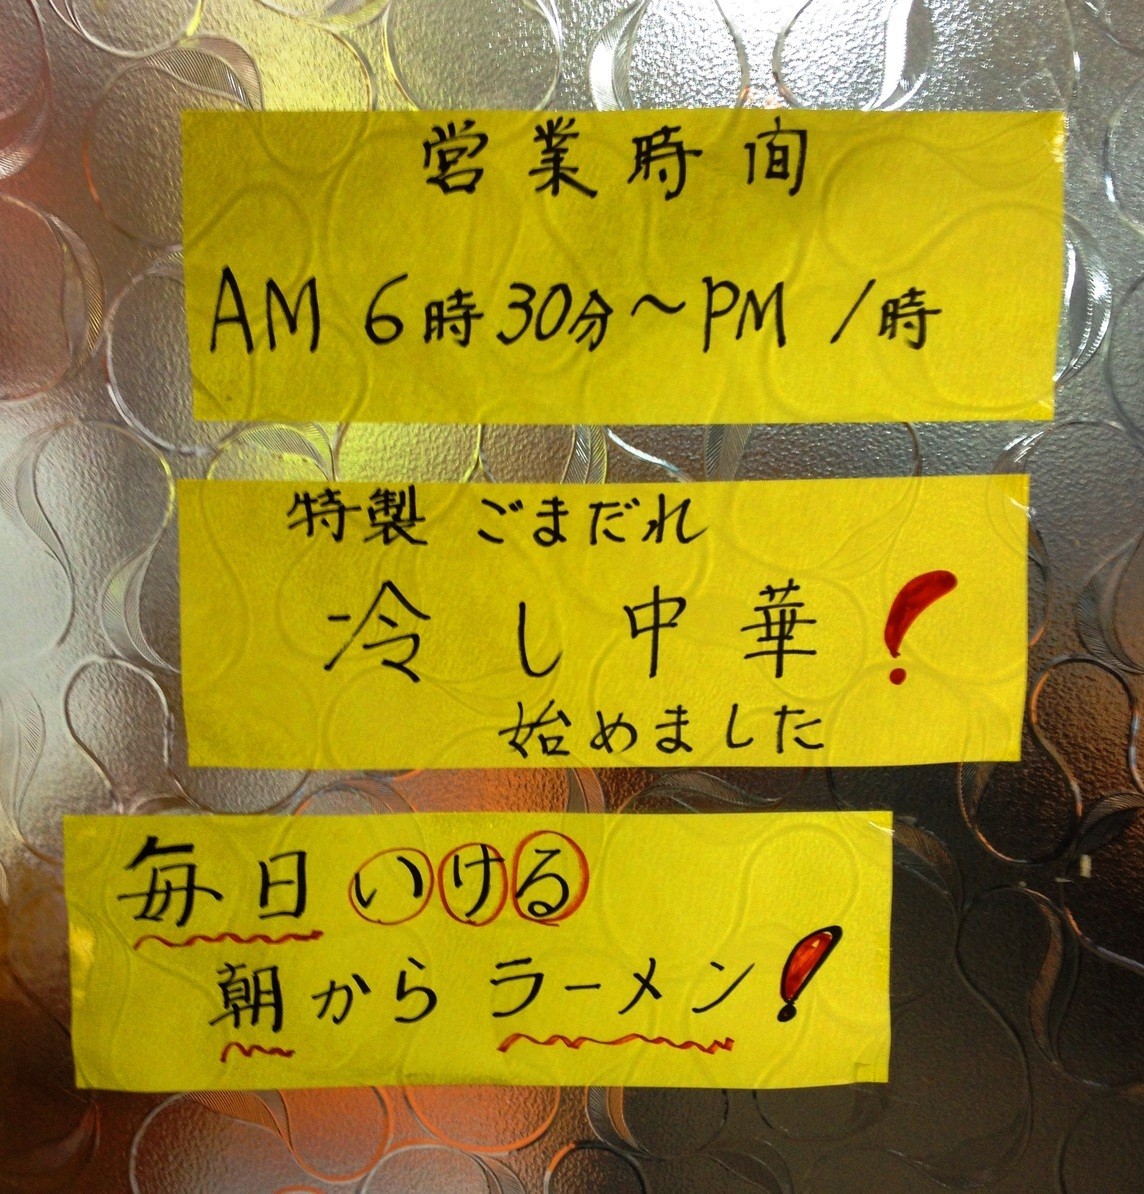 朝ラーメン!? 京都で早朝6時代オープンのモーニングにおすすめのお店３選